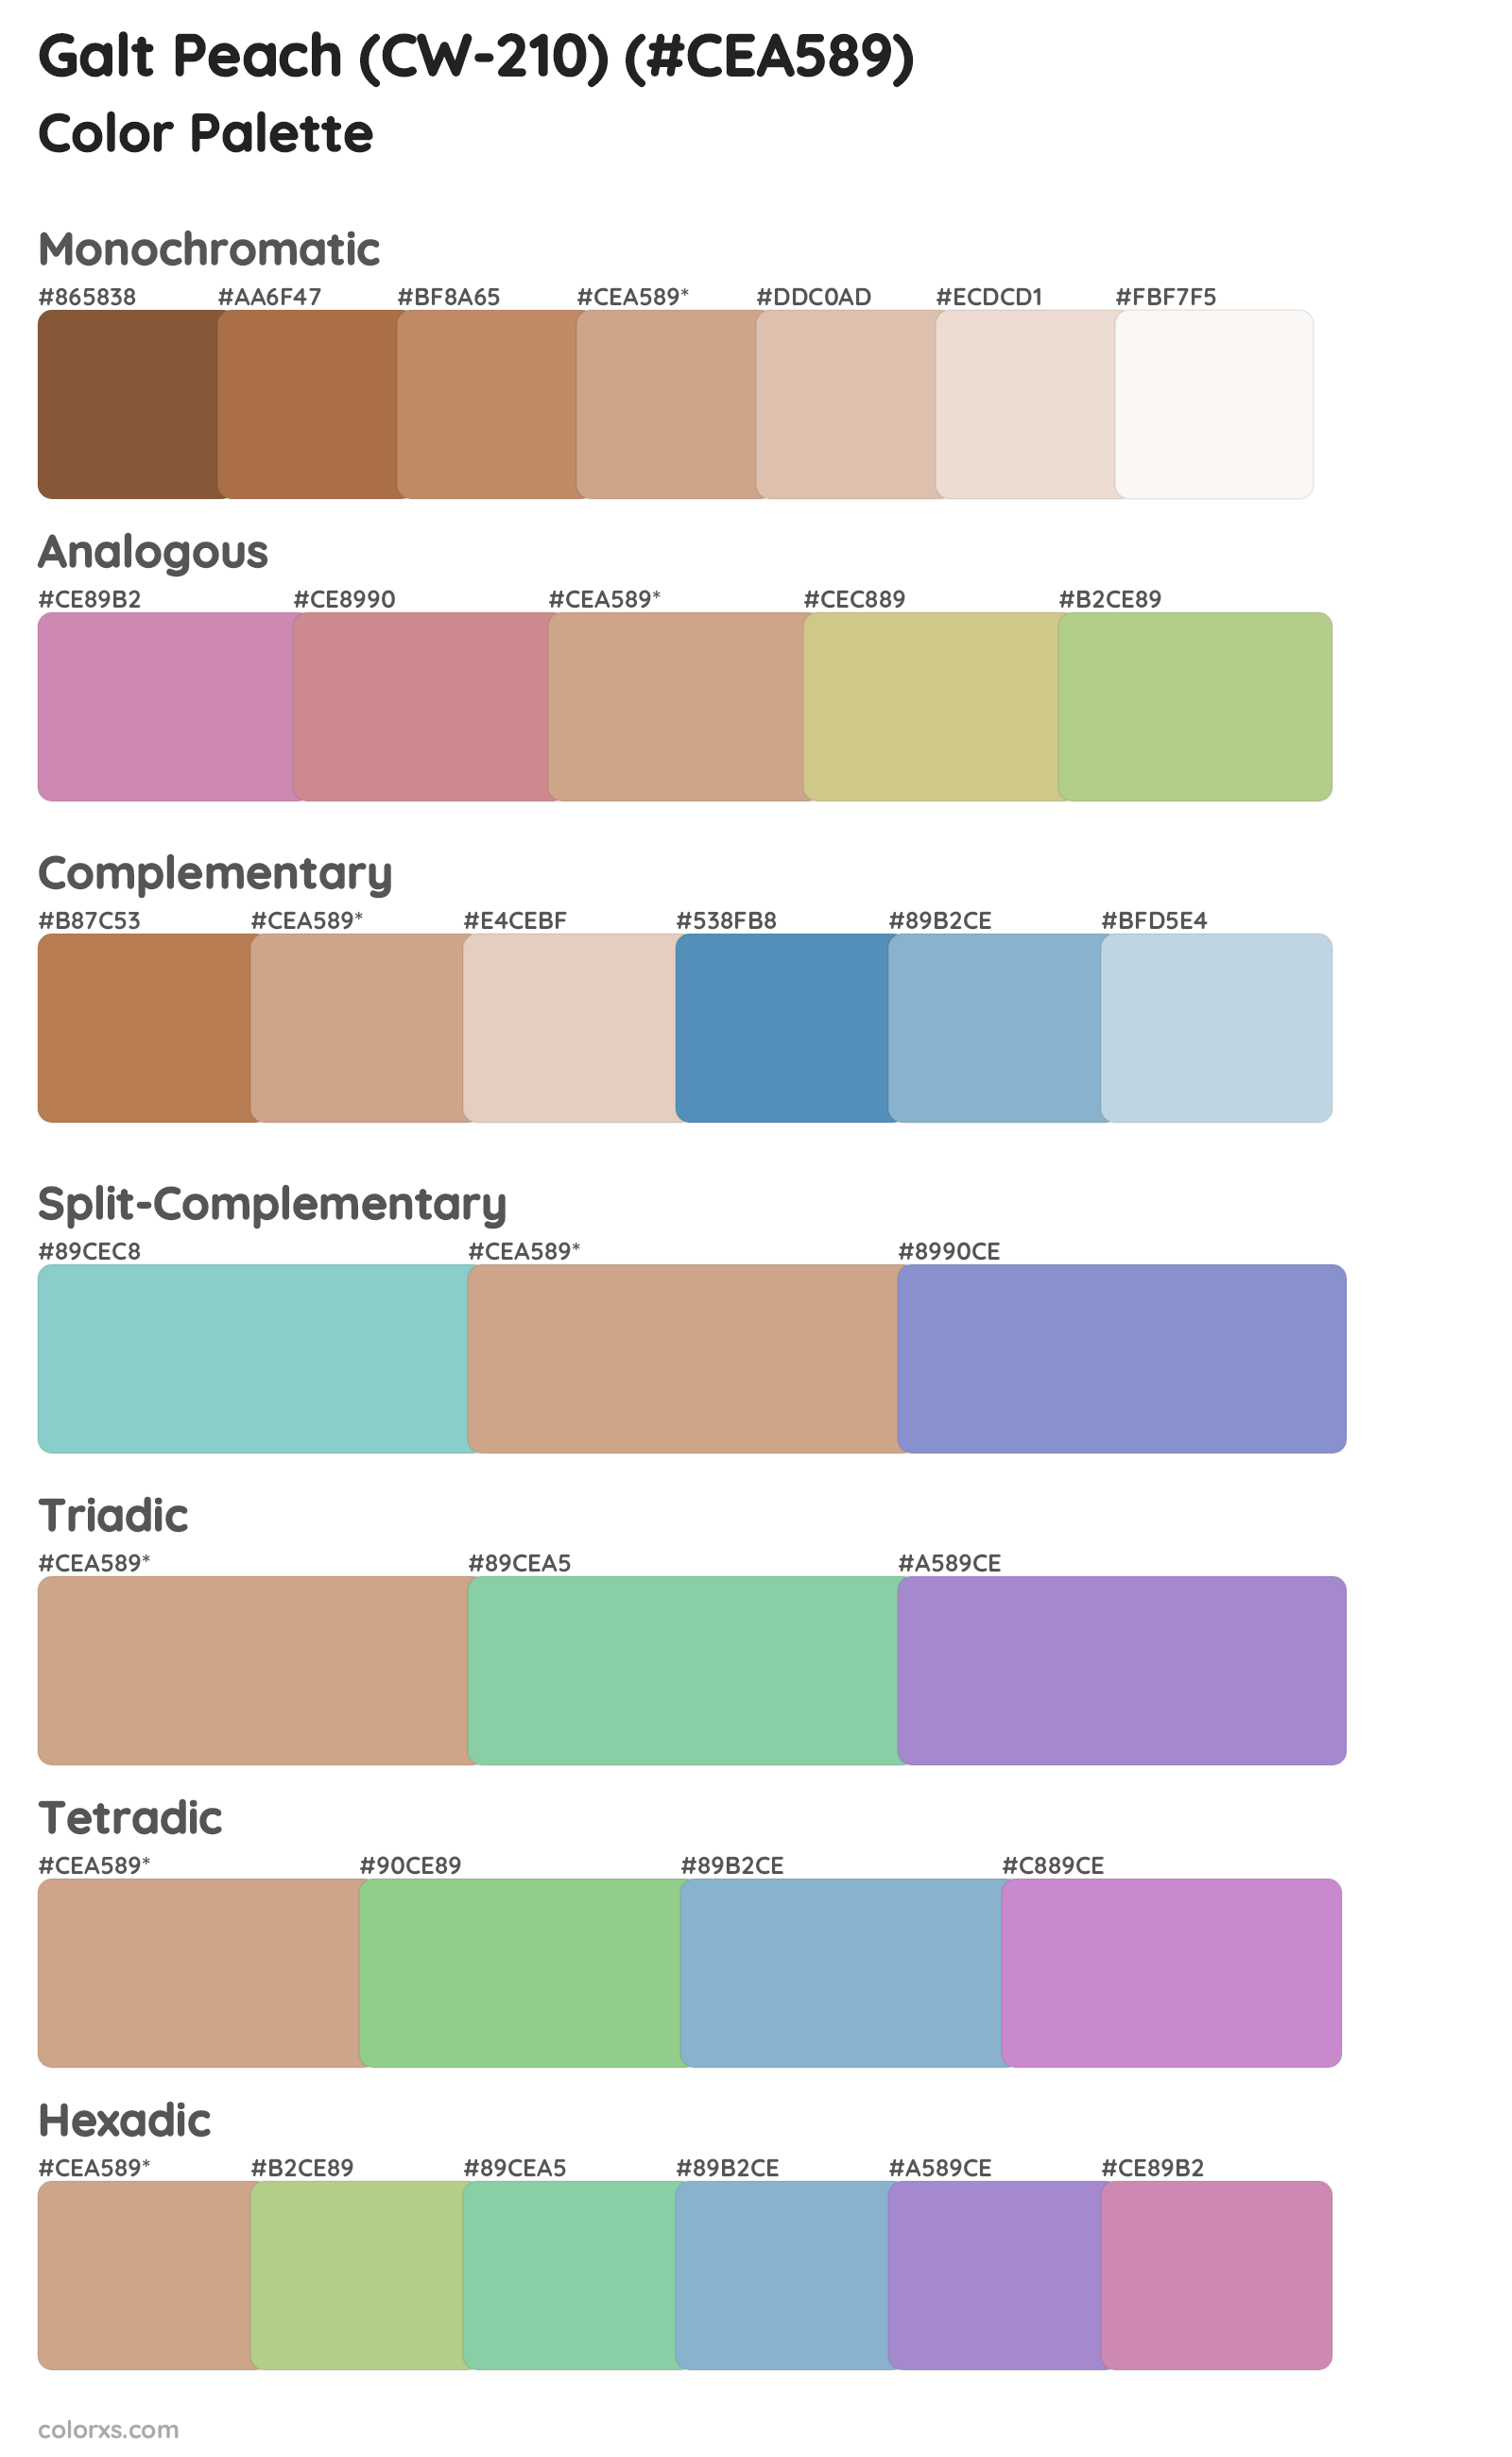 Galt Peach (CW-210) Color Scheme Palettes